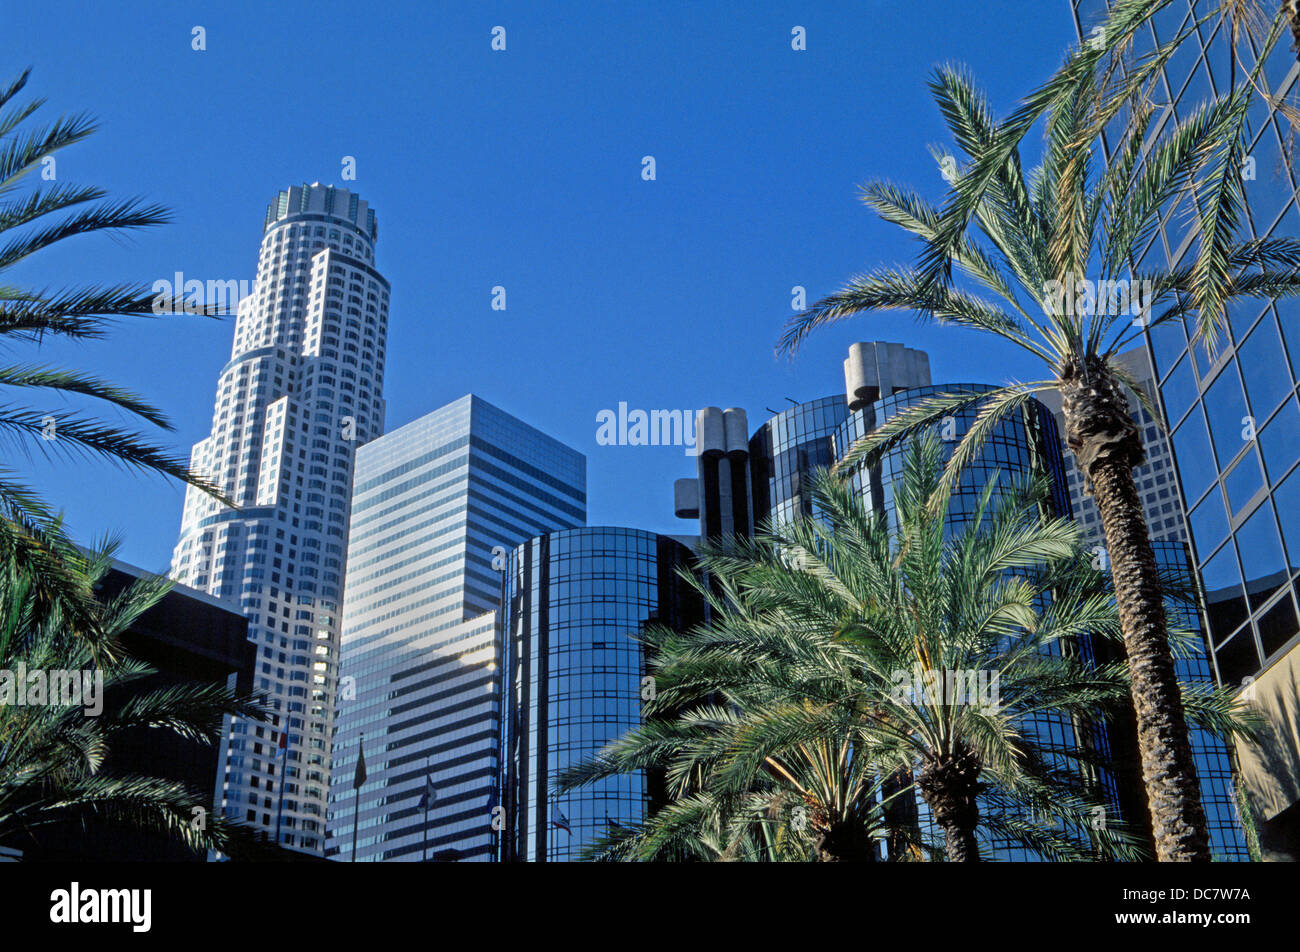 Wolkenkratzer von mannigfaltigen architektonischen Designs geben eine unverwechselbare Skyline der Innenstadt Bankenviertel in Los Angeles, Kalifornien, USA. Stockfoto